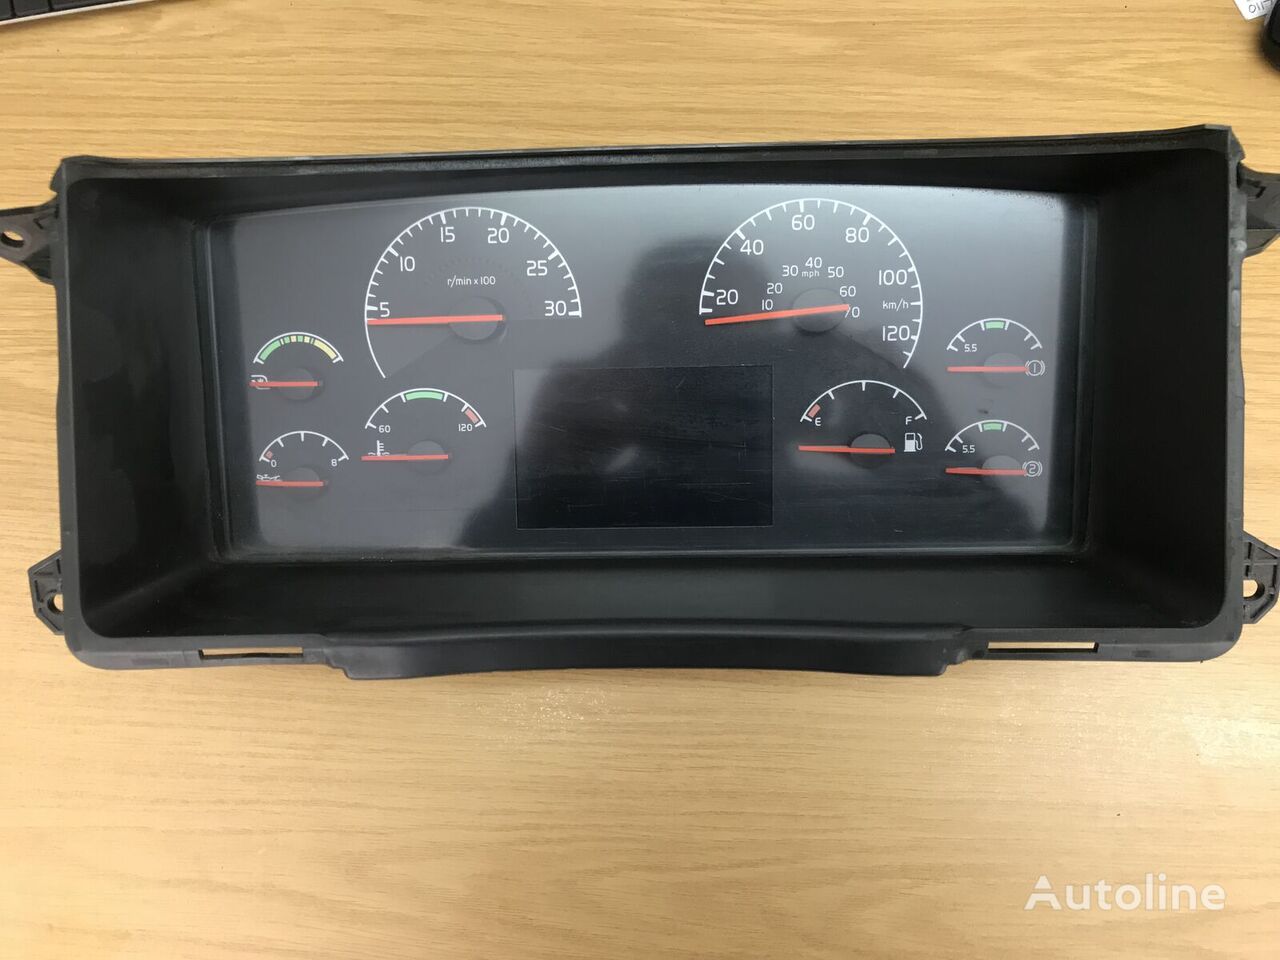 prístrojová doska Volvo Speedometer/Dash 20466984 na nákladného auta Volvo FH/FM/FL